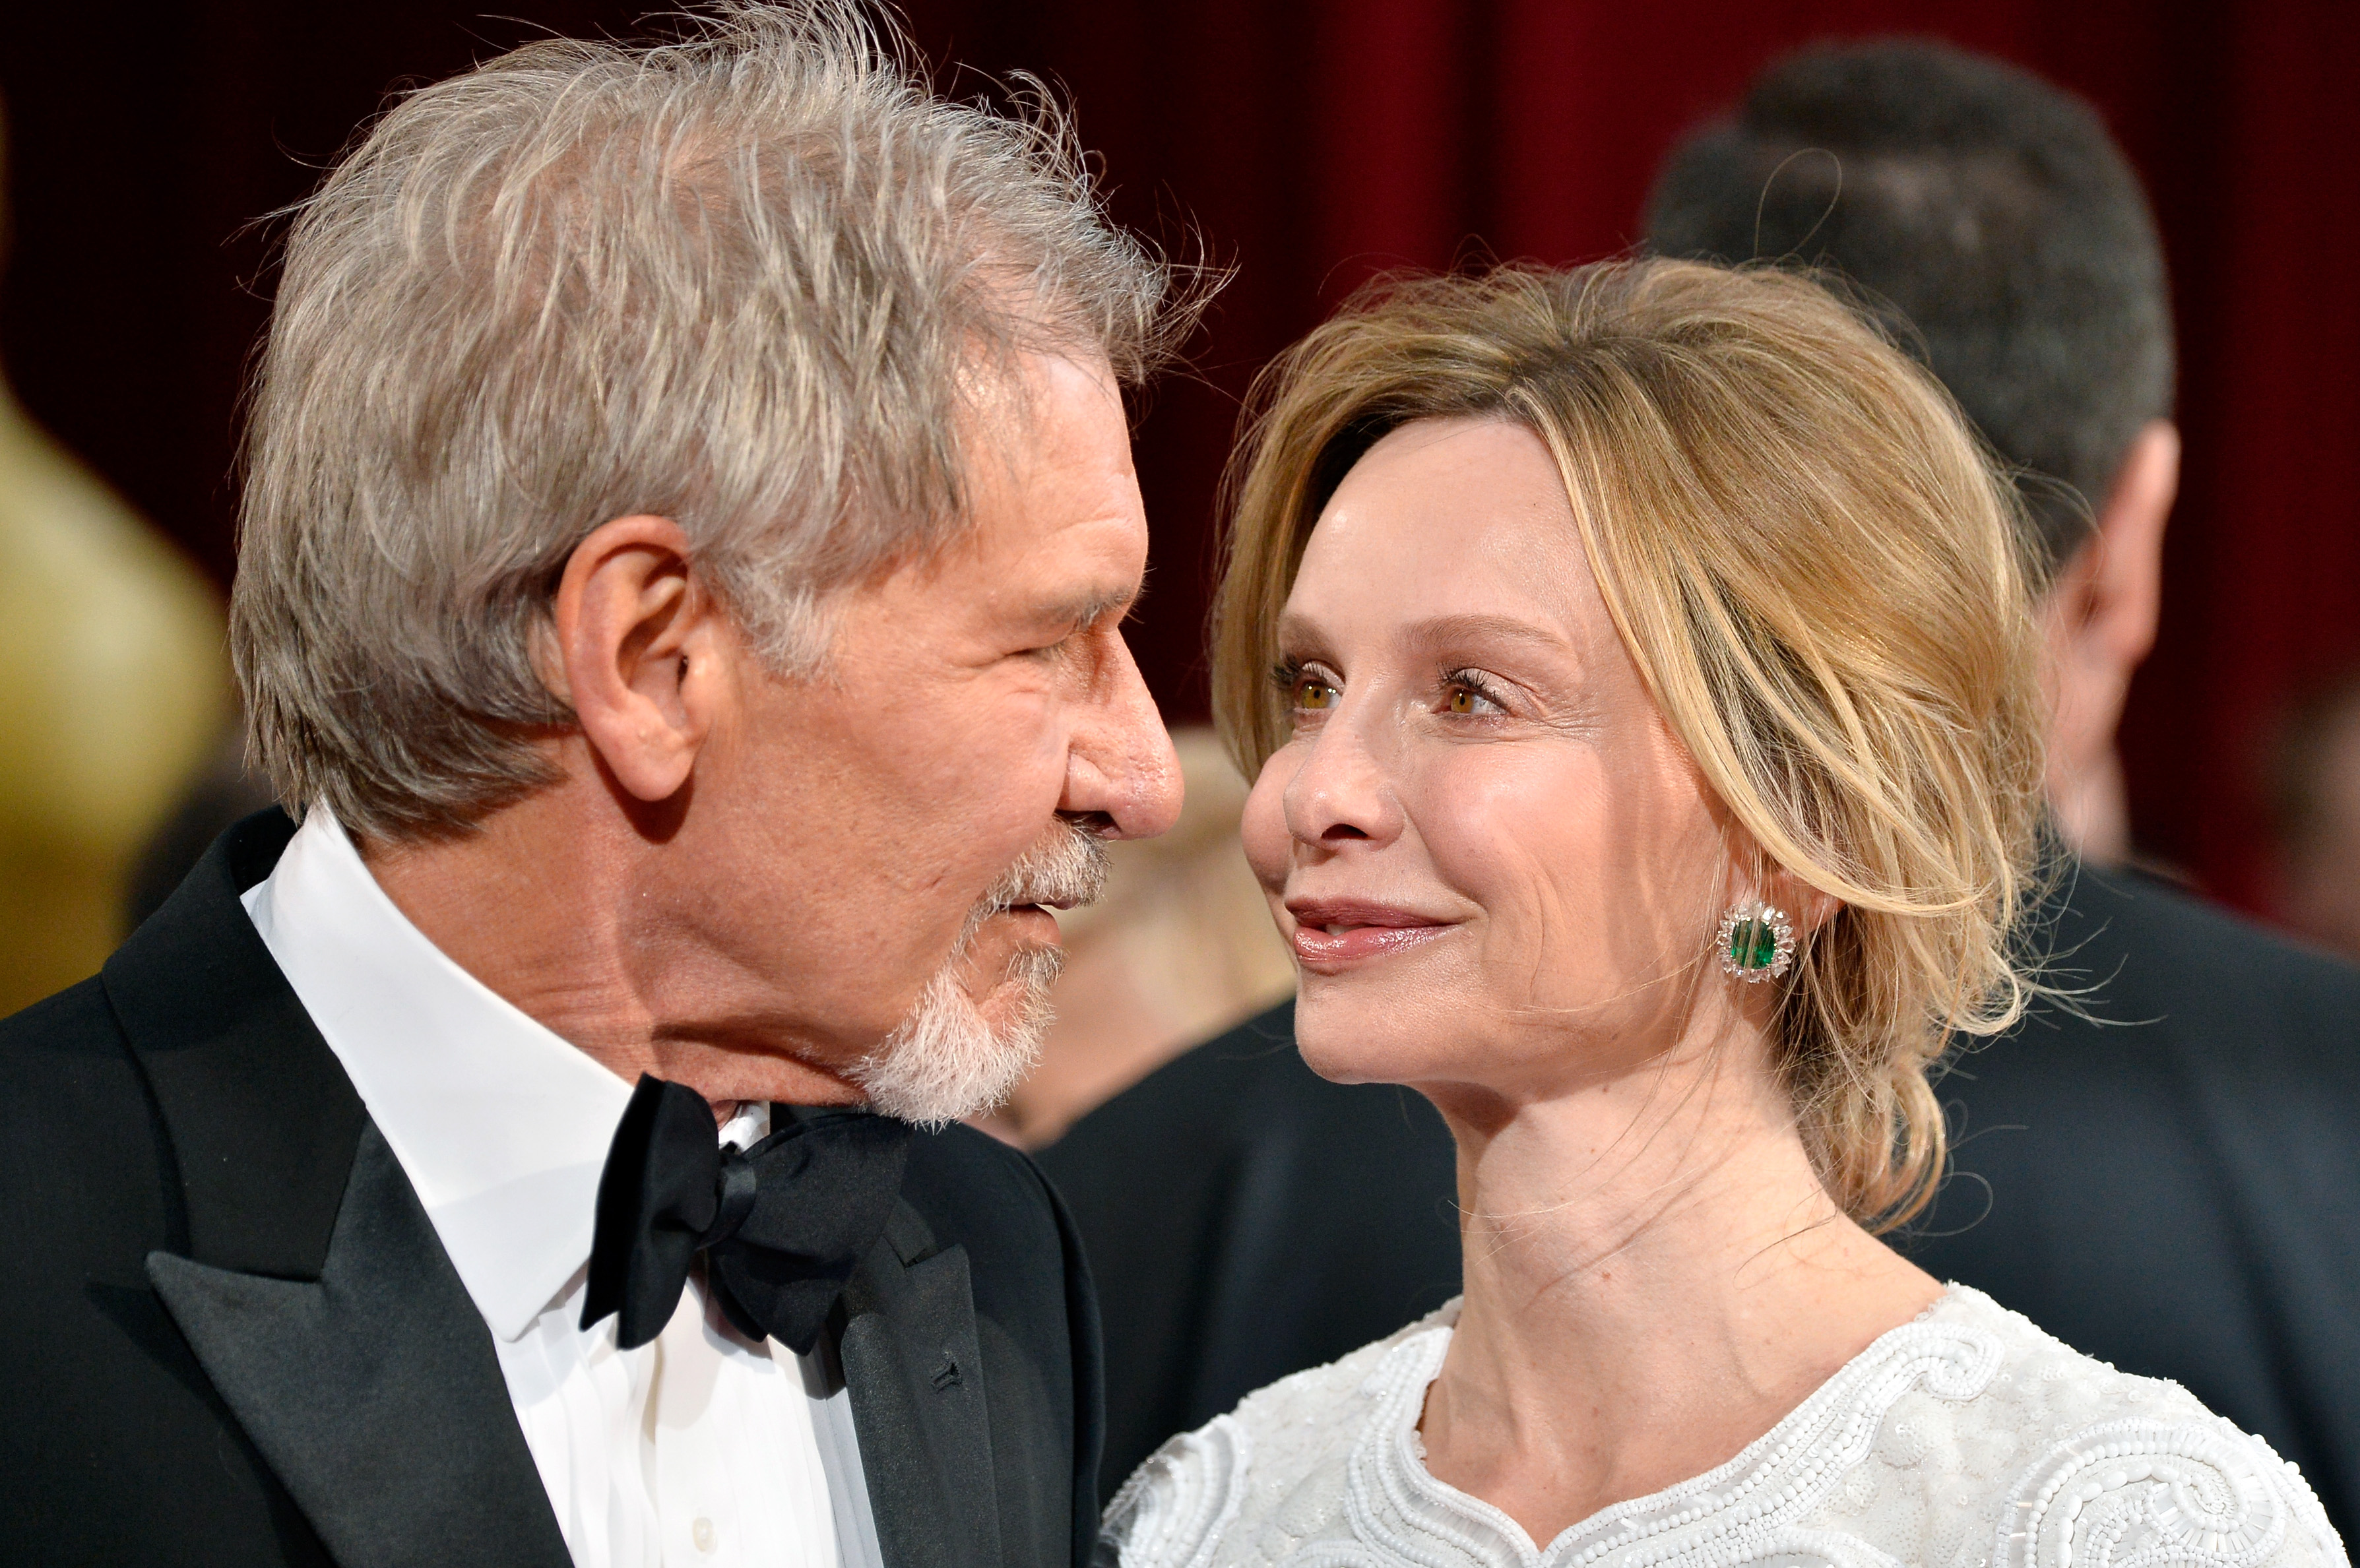 Harrison Ford et Calista Flockhart aux Oscars le 2 mars 2014 à Hollywood, Californie | Source : Getty Images